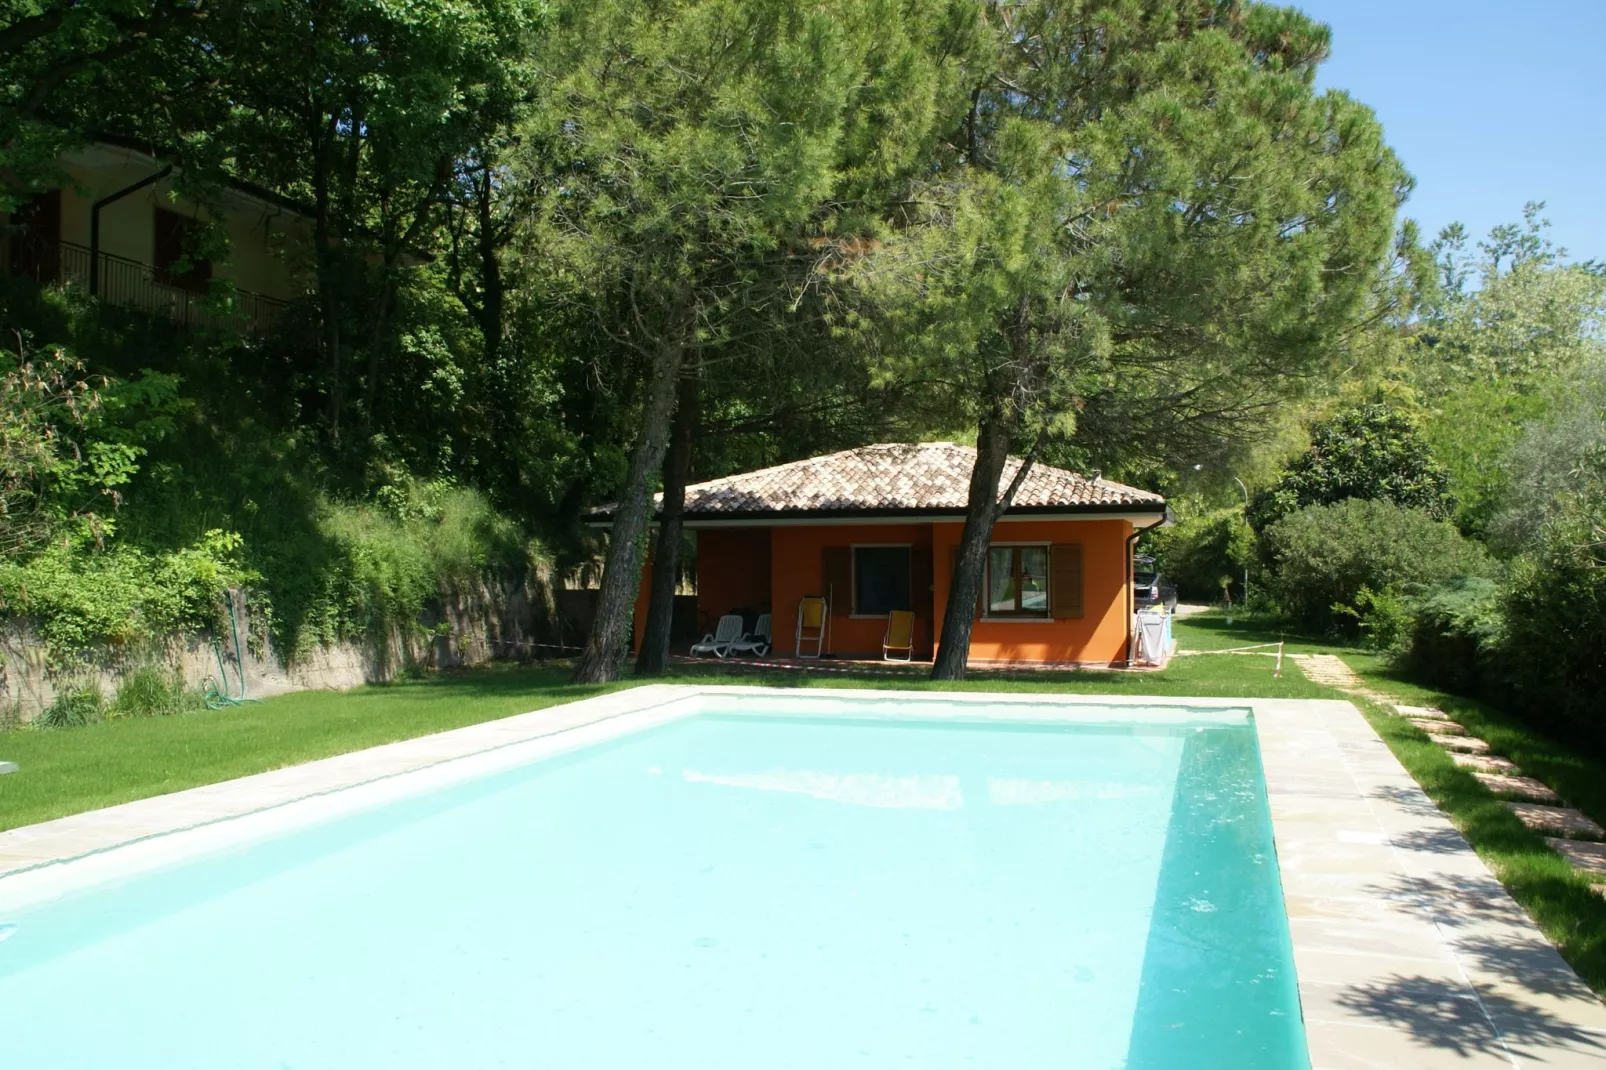 Residence Le Sponde Quadri Due Quattro-Zwembad